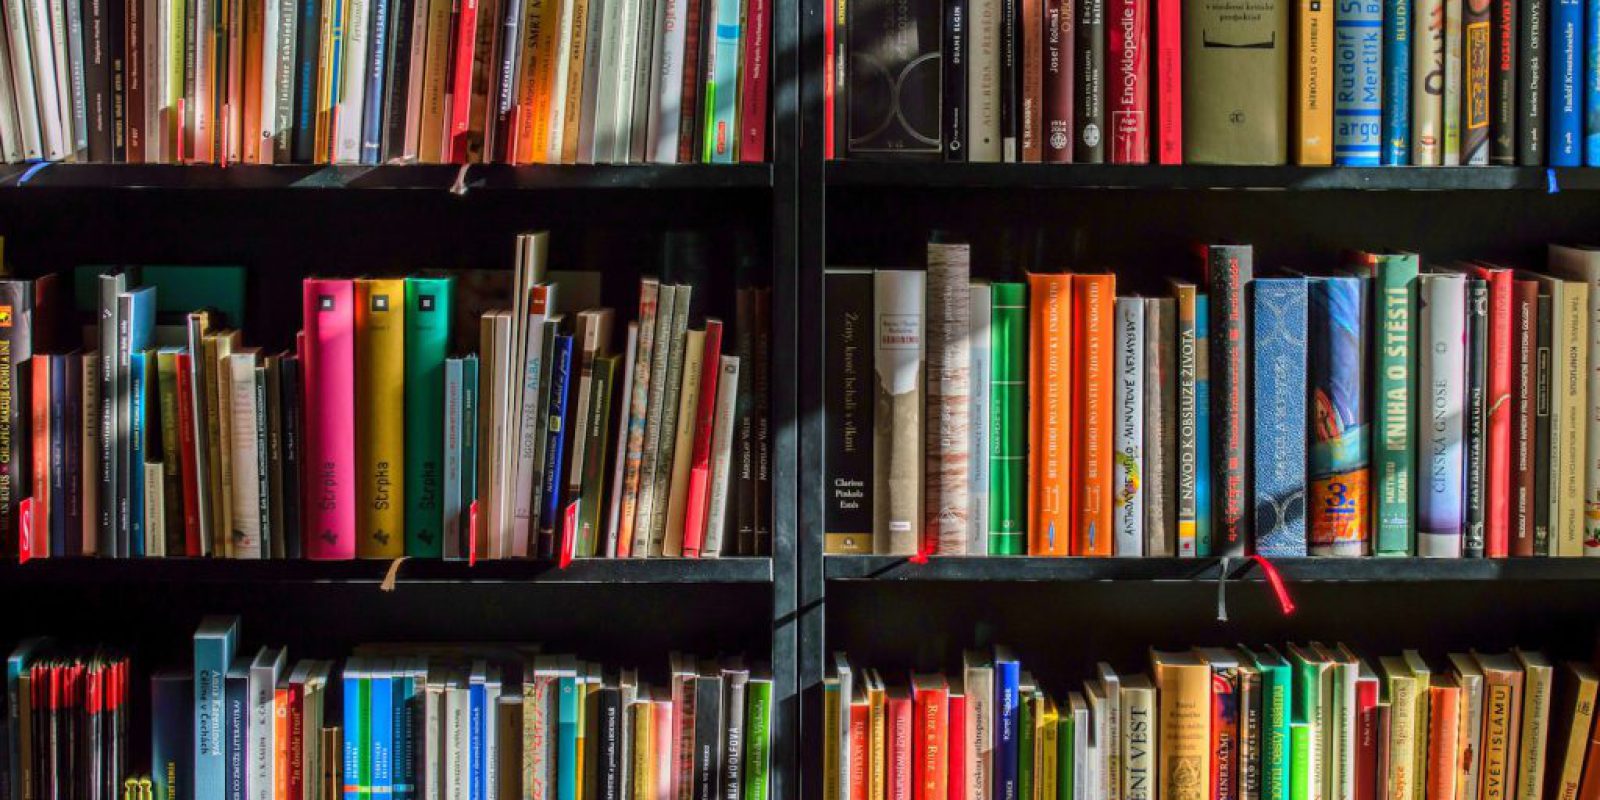 Twoja własna czytelnia: jak stworzyć wyjątkową biblioteczkę w domu